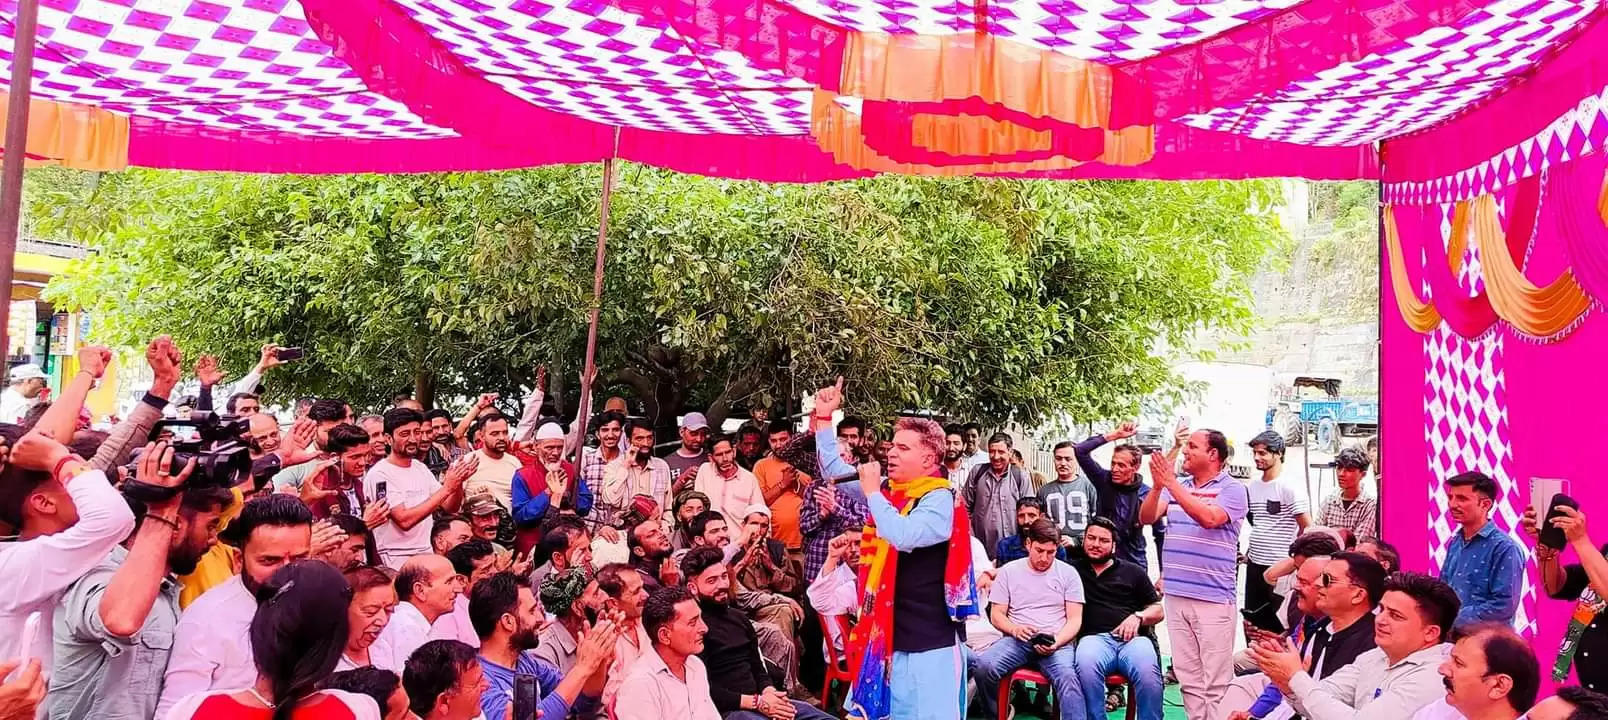 मोदी सरकार ने जम्मू-कश्मीर में सभी समुदायों के साथ न्याय किया : रैना